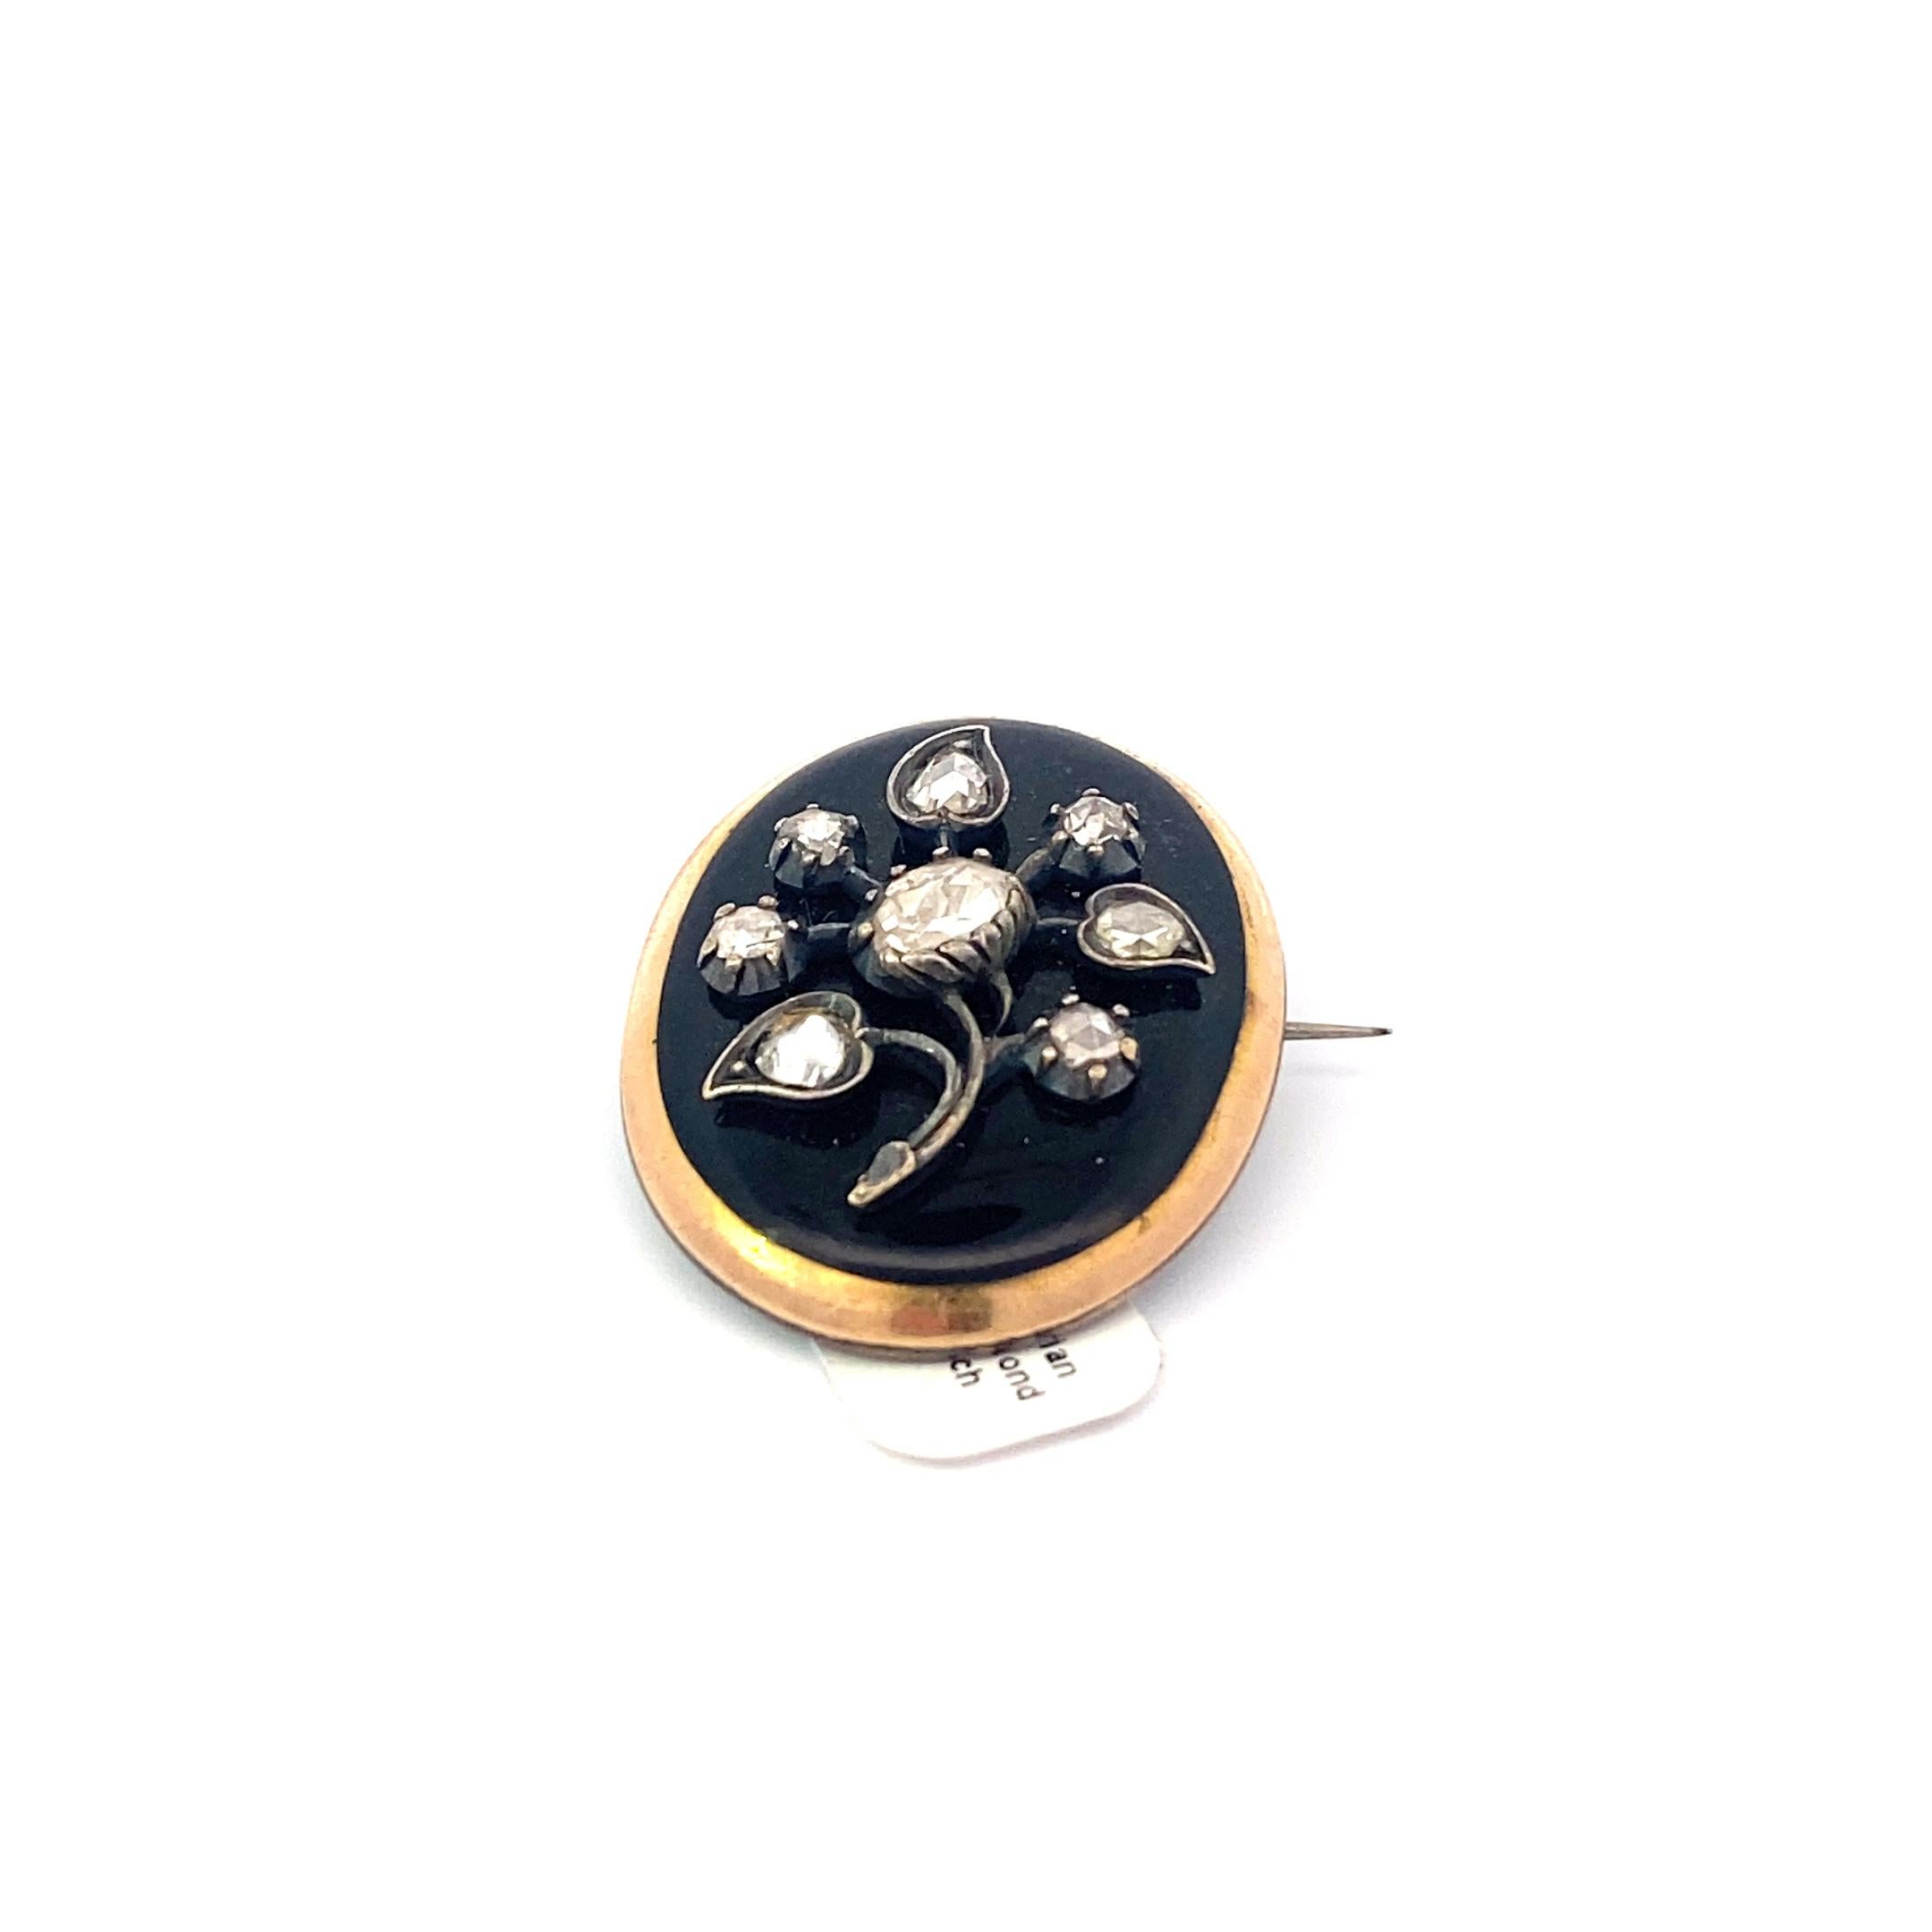 Einzigartige Emaille-Brosche aus der viktorianischen Periode, umhüllt von 10k Gold mit sieben (7) 2mm runden Diamanten im Rosenschliff und einem (1) 4mm ovalen Diamanten im Rosenschliff. Die Diamanten sind in einem floralen Muster mit flachen Zacken